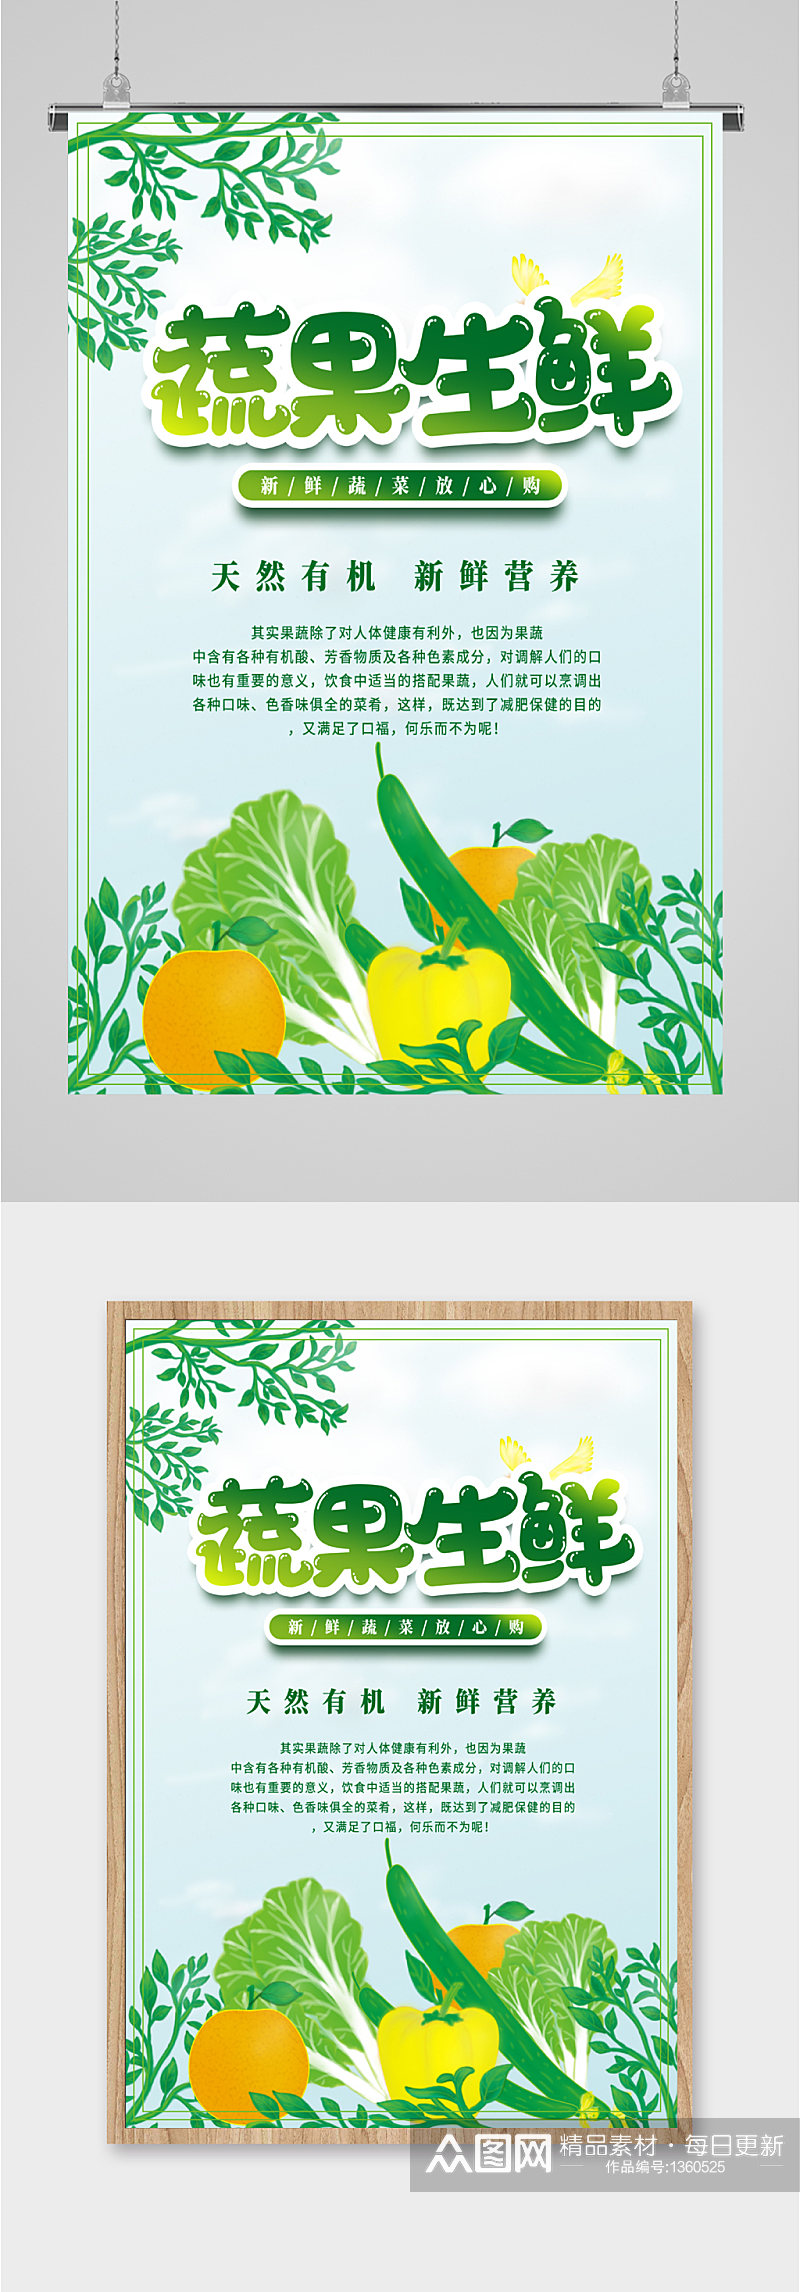 蔬果生鲜宣传海报素材